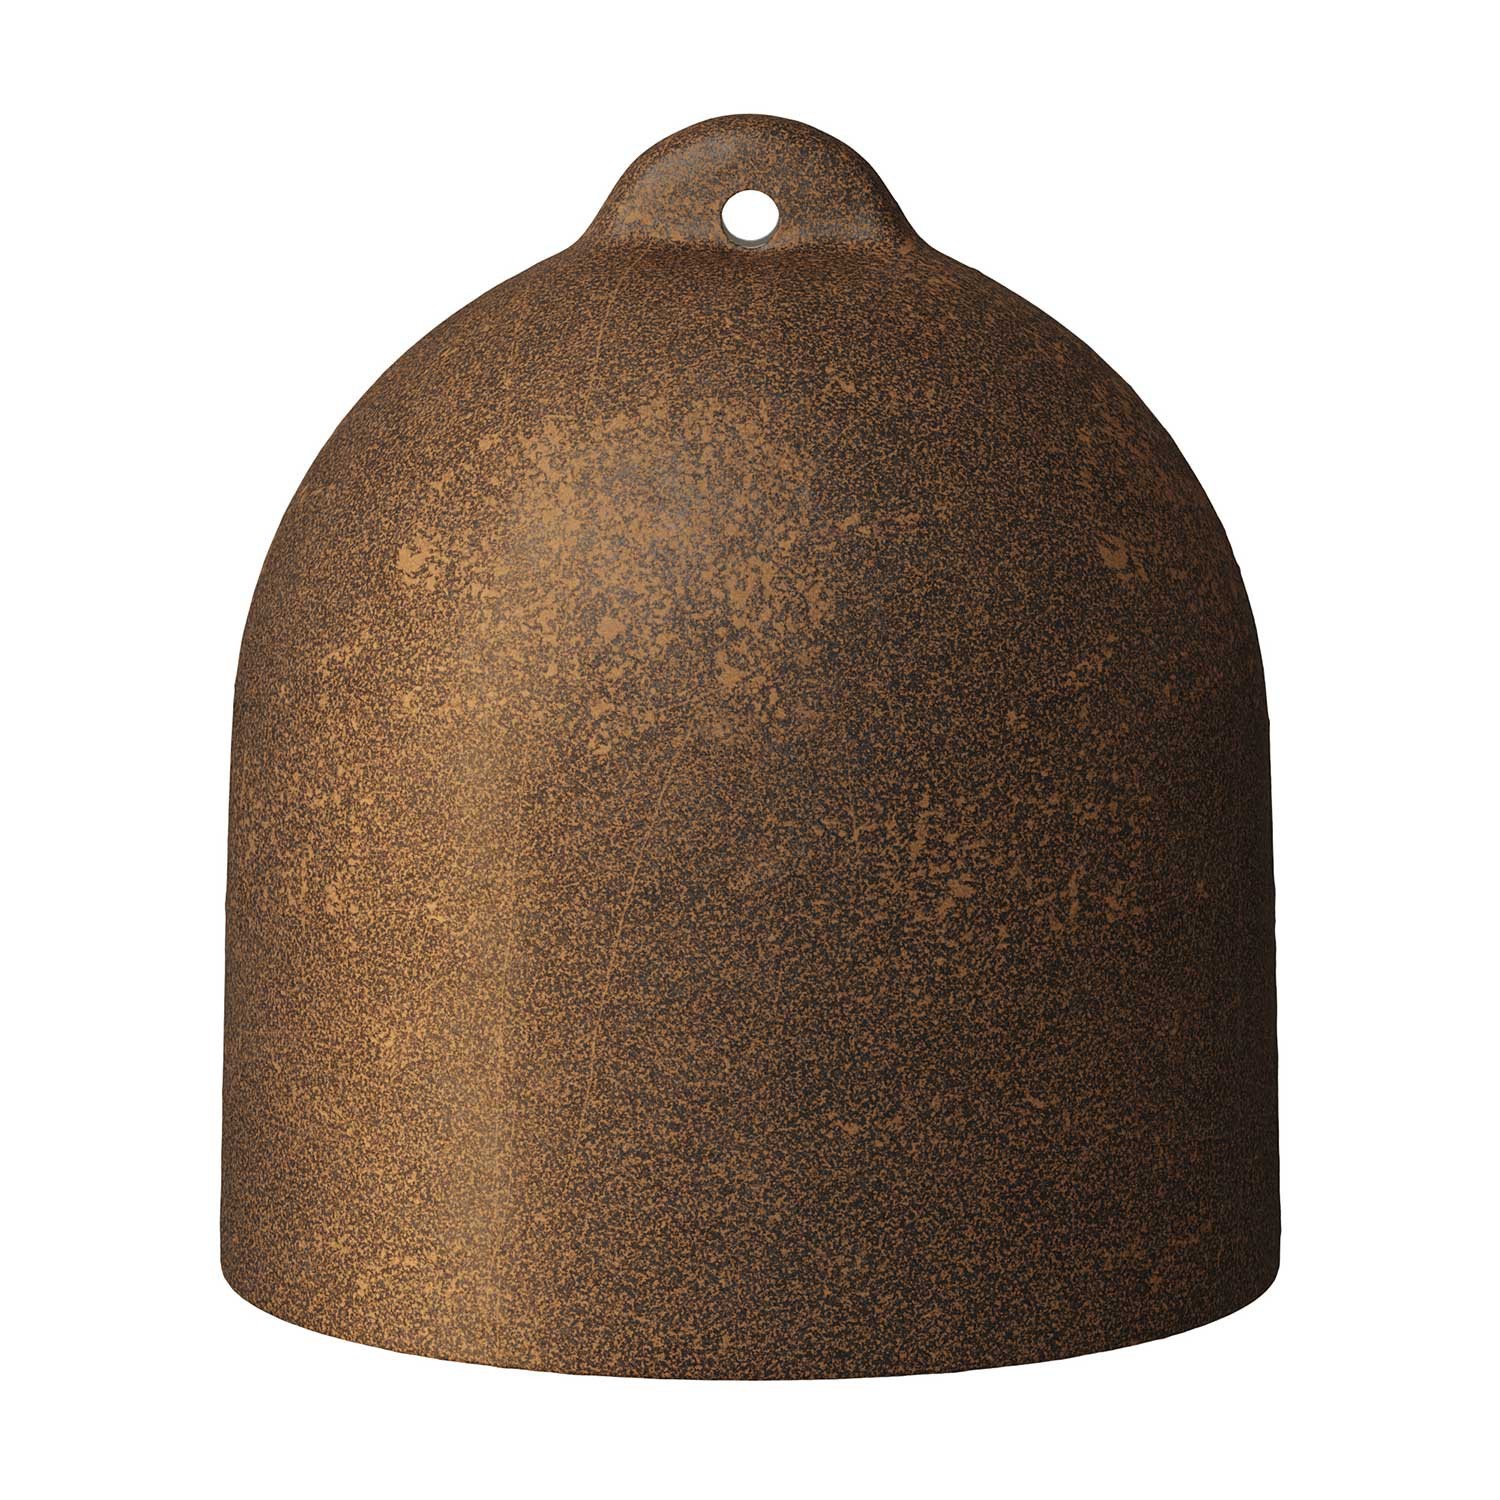 Glockenförmiger Lampenschirm M aus Keramik zum Aufhängen - Made in Italy